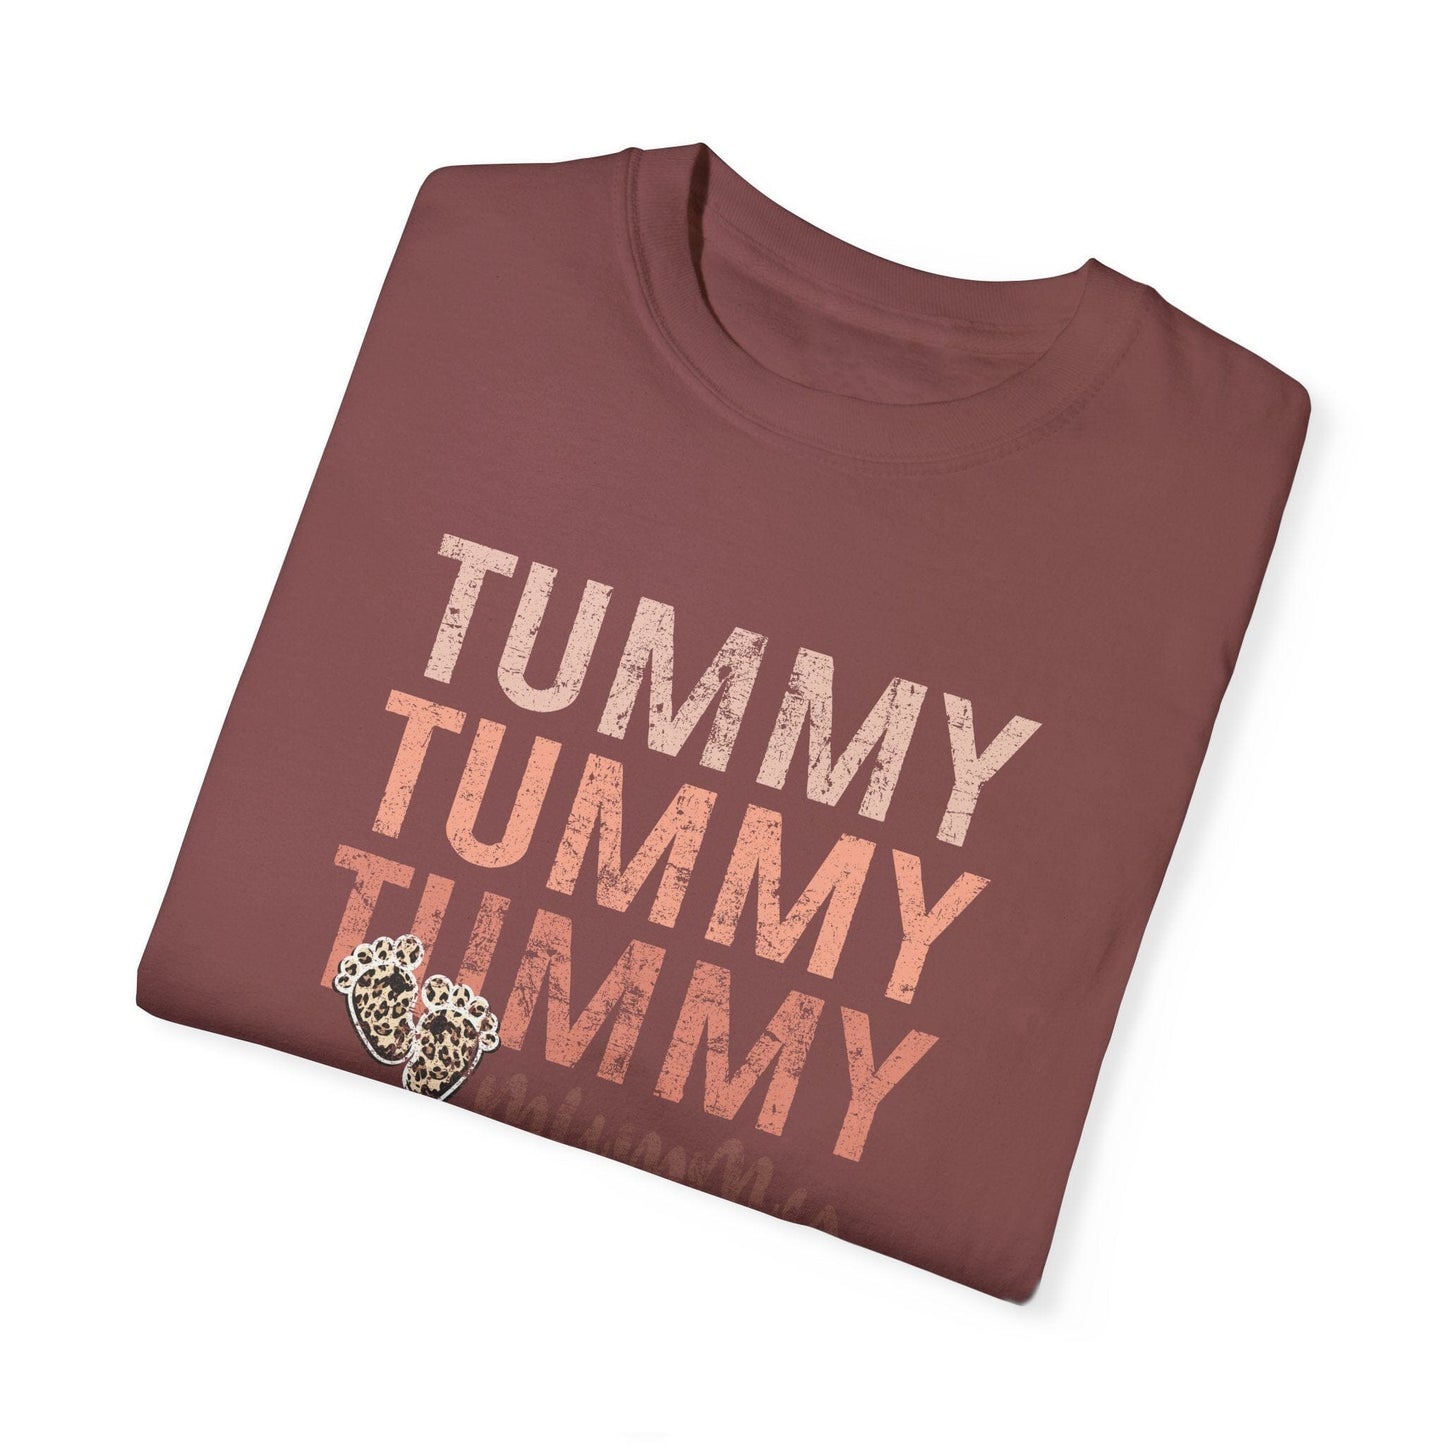 Tummy Mummy Surrogate Mama T-Shirt T-Shirt Printify 